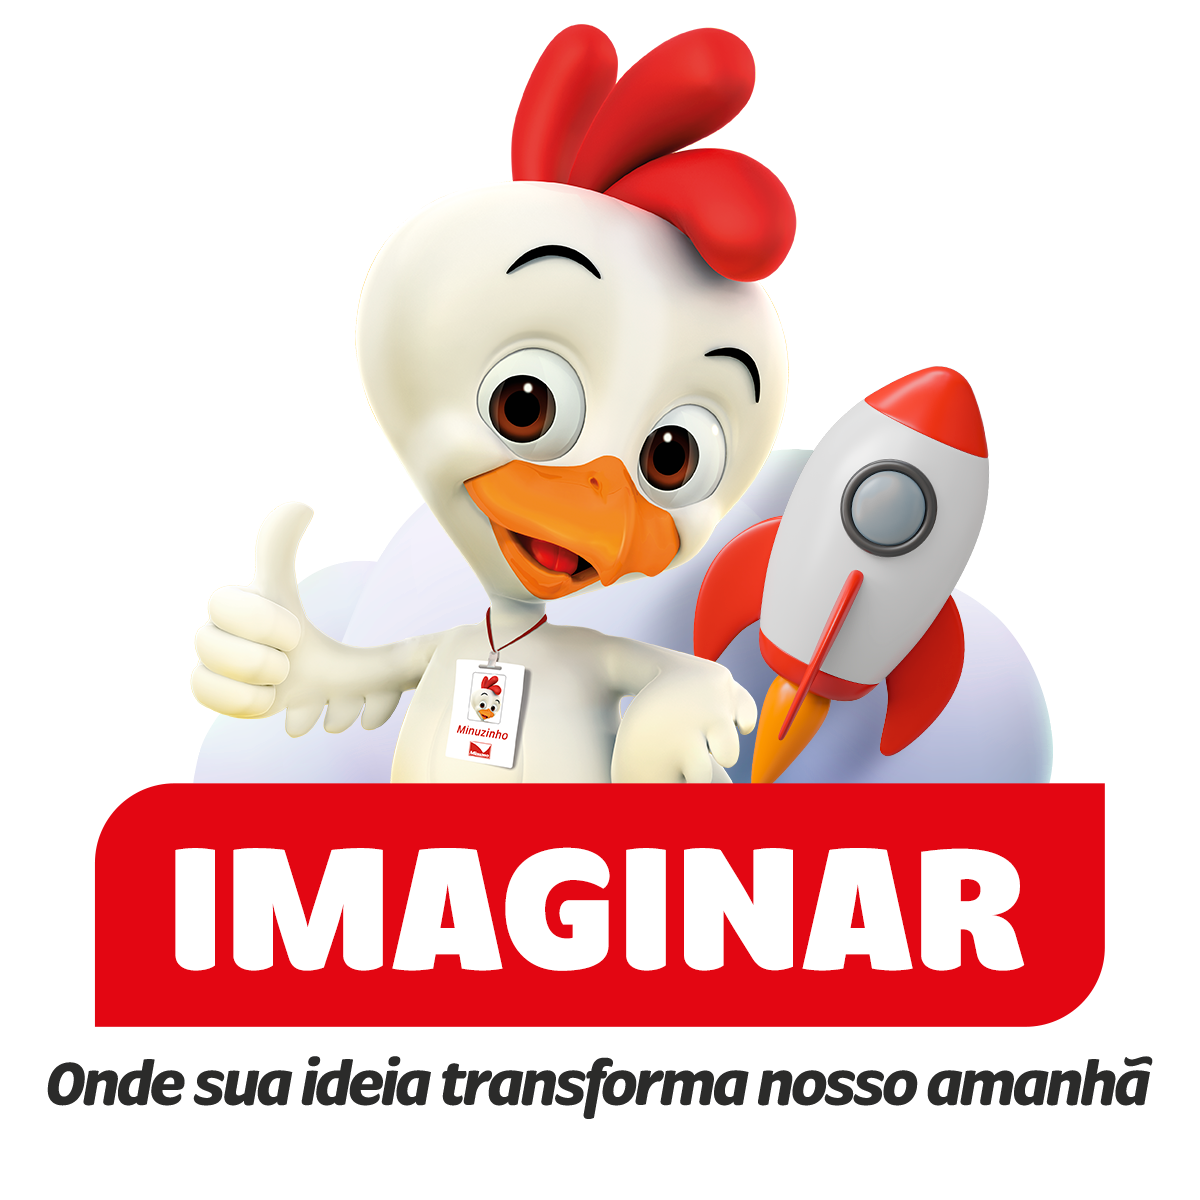 LOGO-IMAGINAR_com slogan